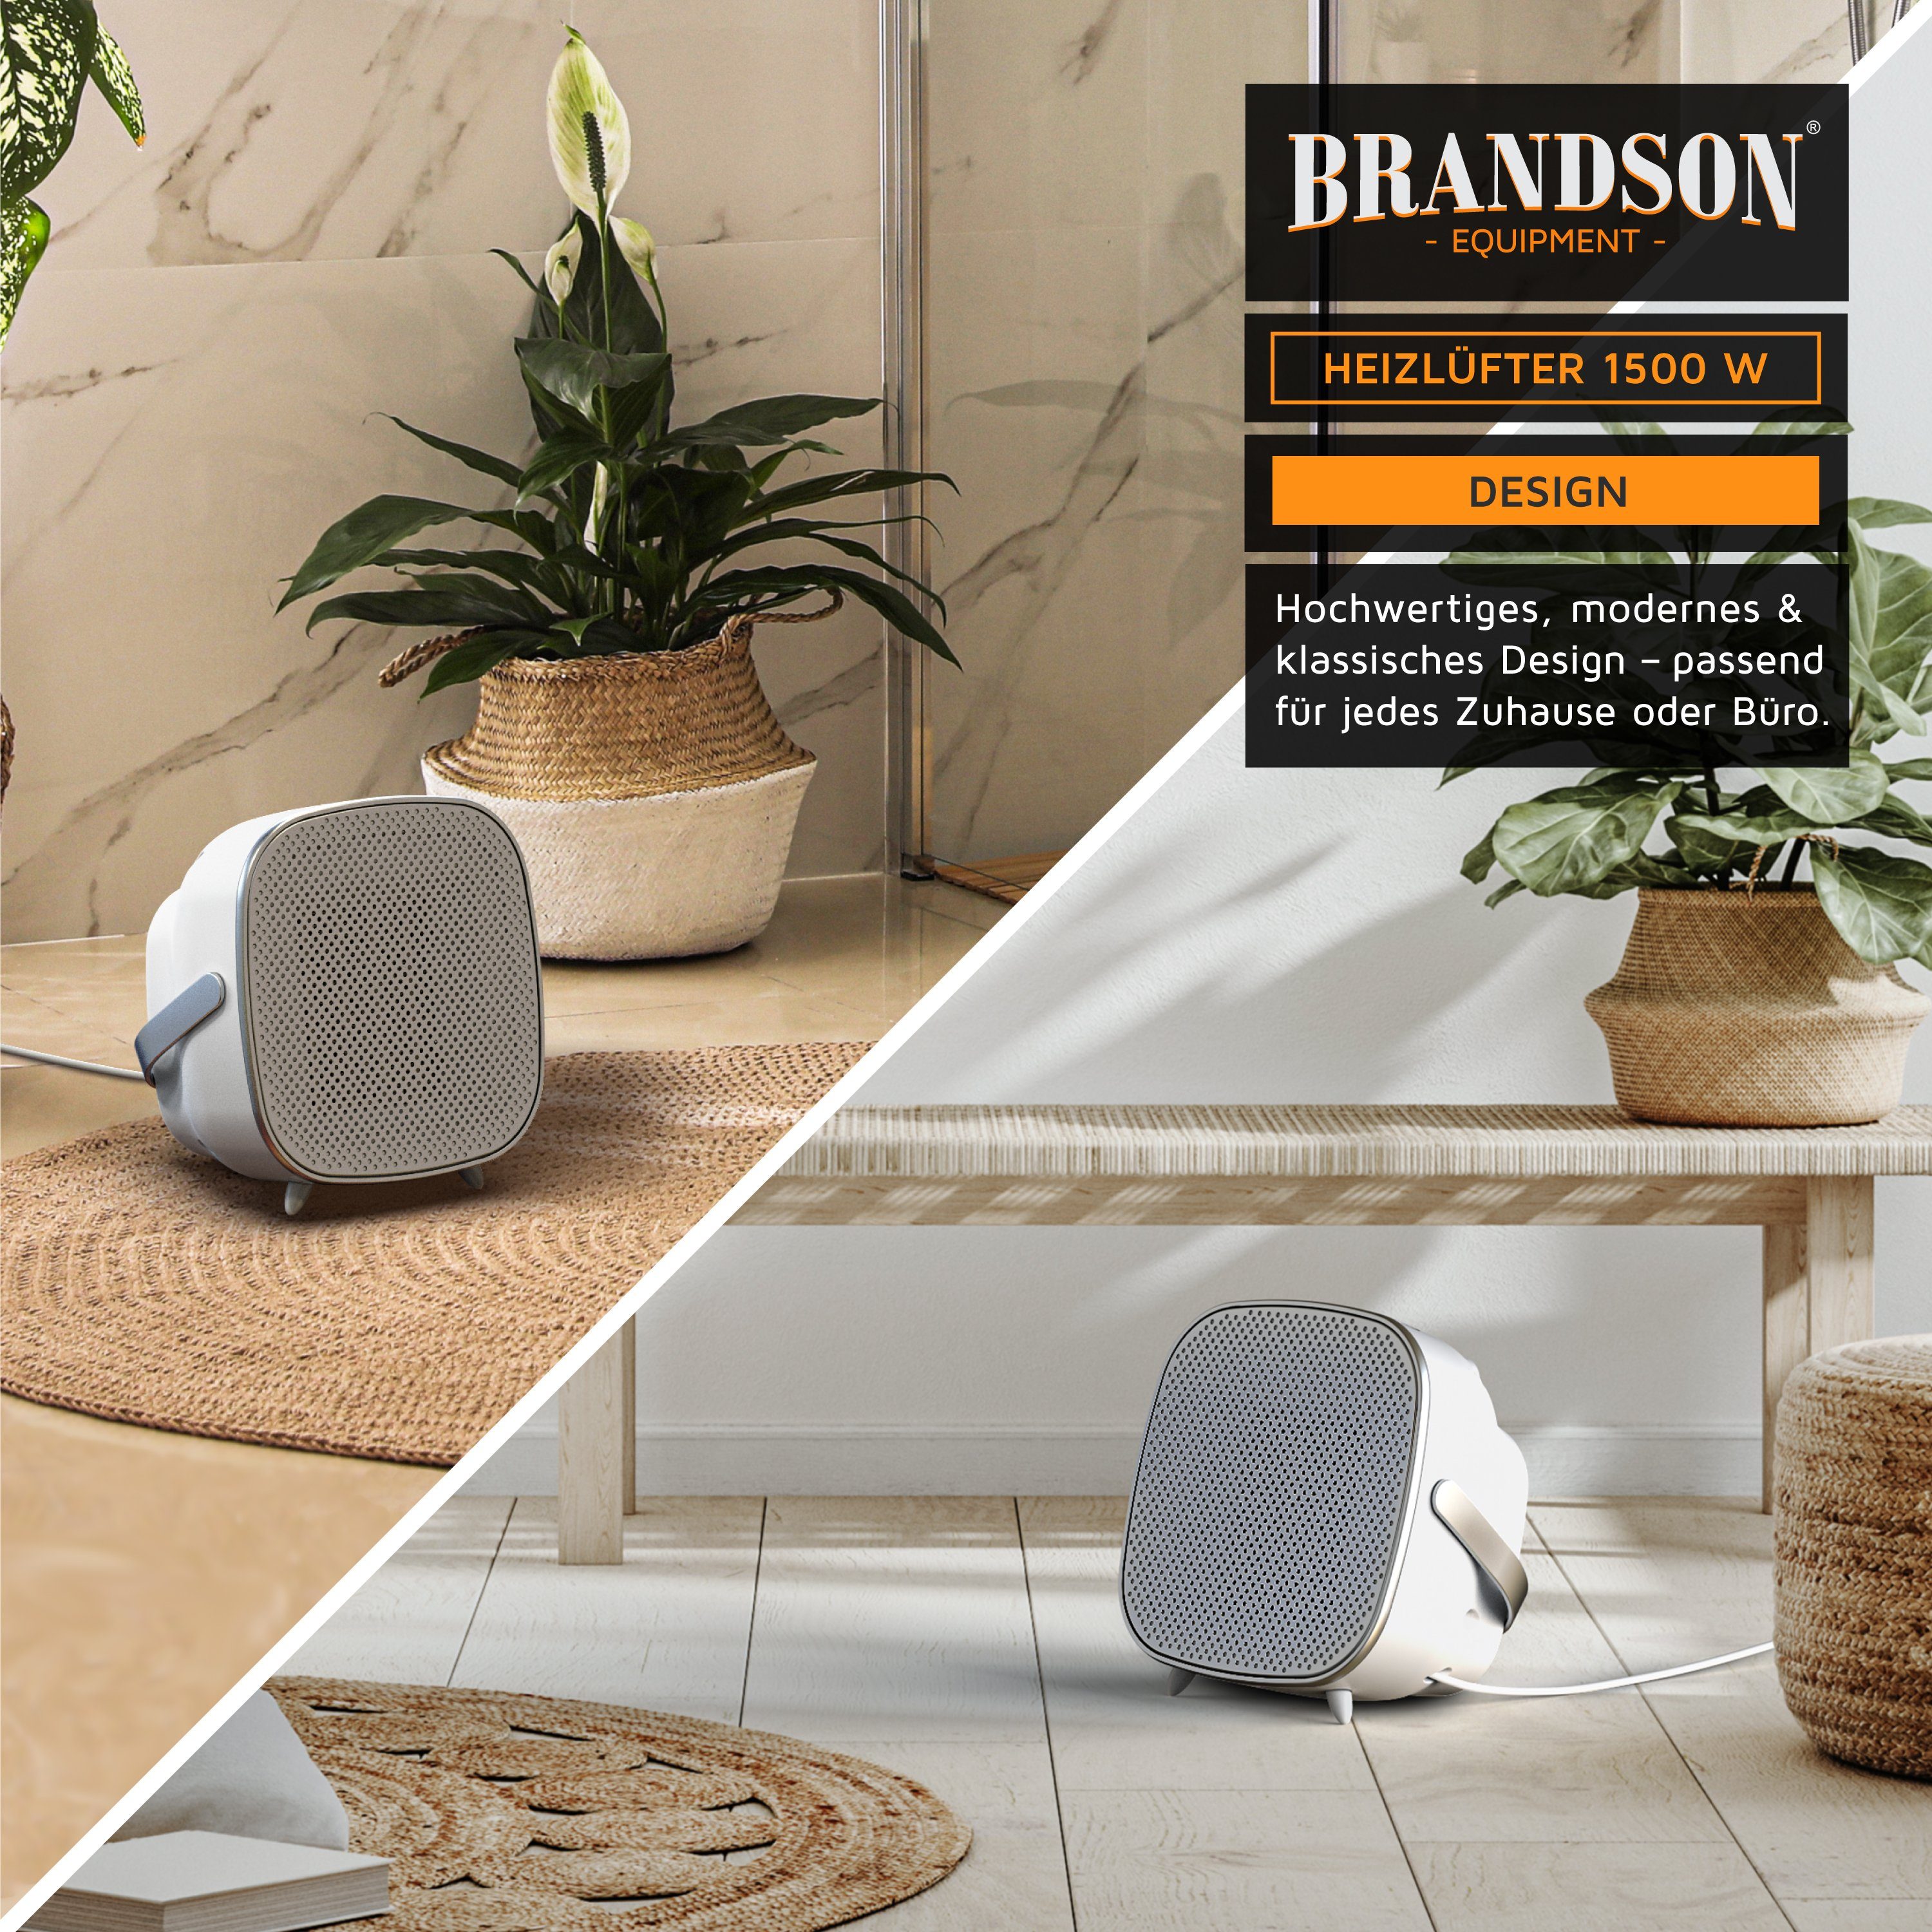 Brandson Keramikheizlüfter, leise silber weiß / Temperaturregelung, W, 1500 mit Badezimmer Schnellheizer energiesparend